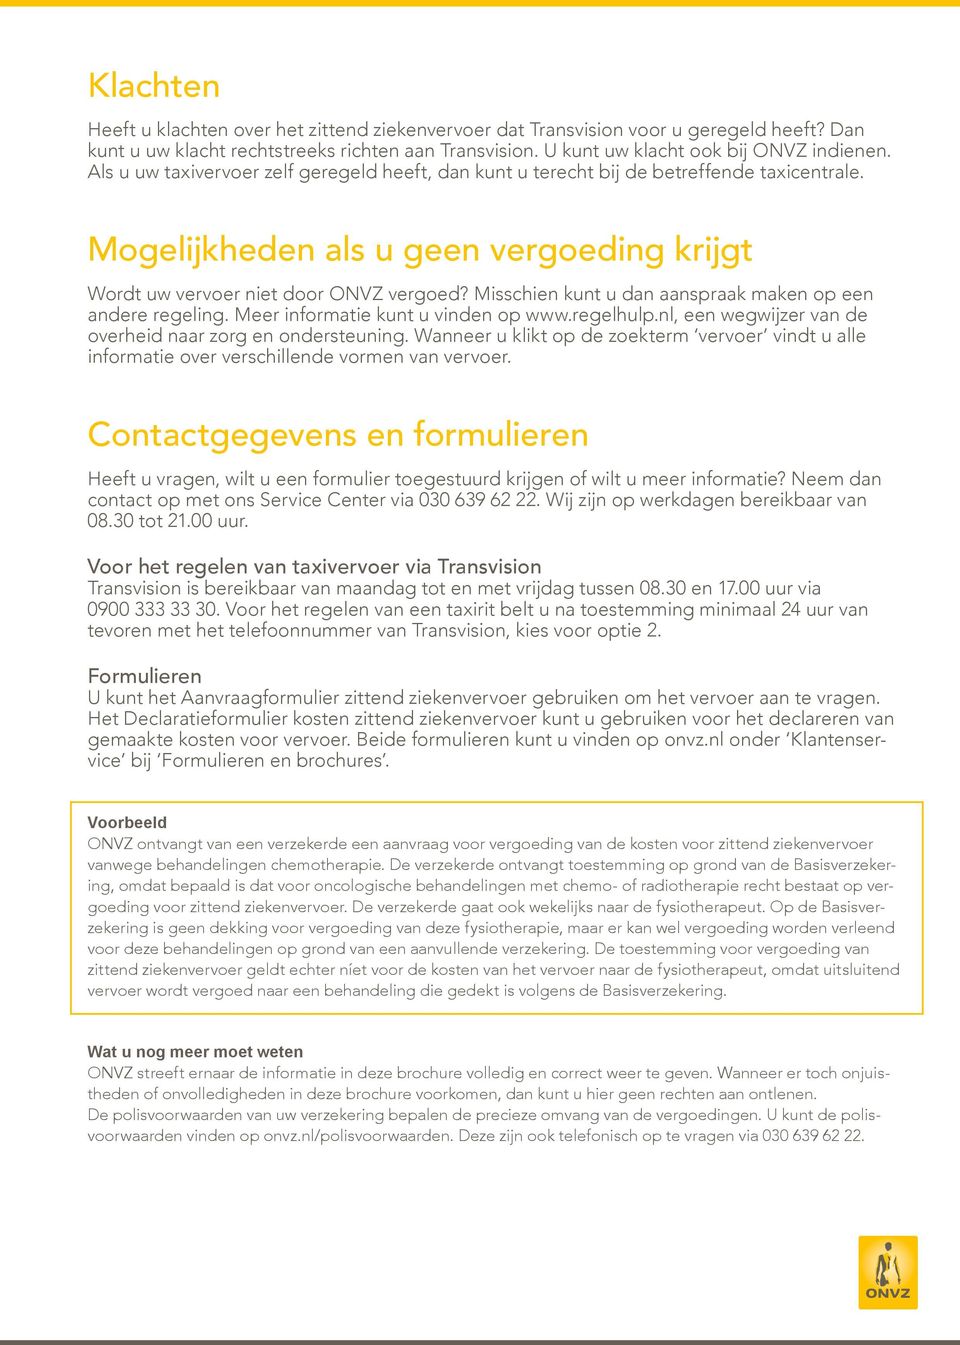 Misschien kunt u dan aanspraak maken op een andere regeling. Meer informatie kunt u vinden op www.regelhulp.nl, een wegwijzer van de overheid naar zorg en ondersteuning.